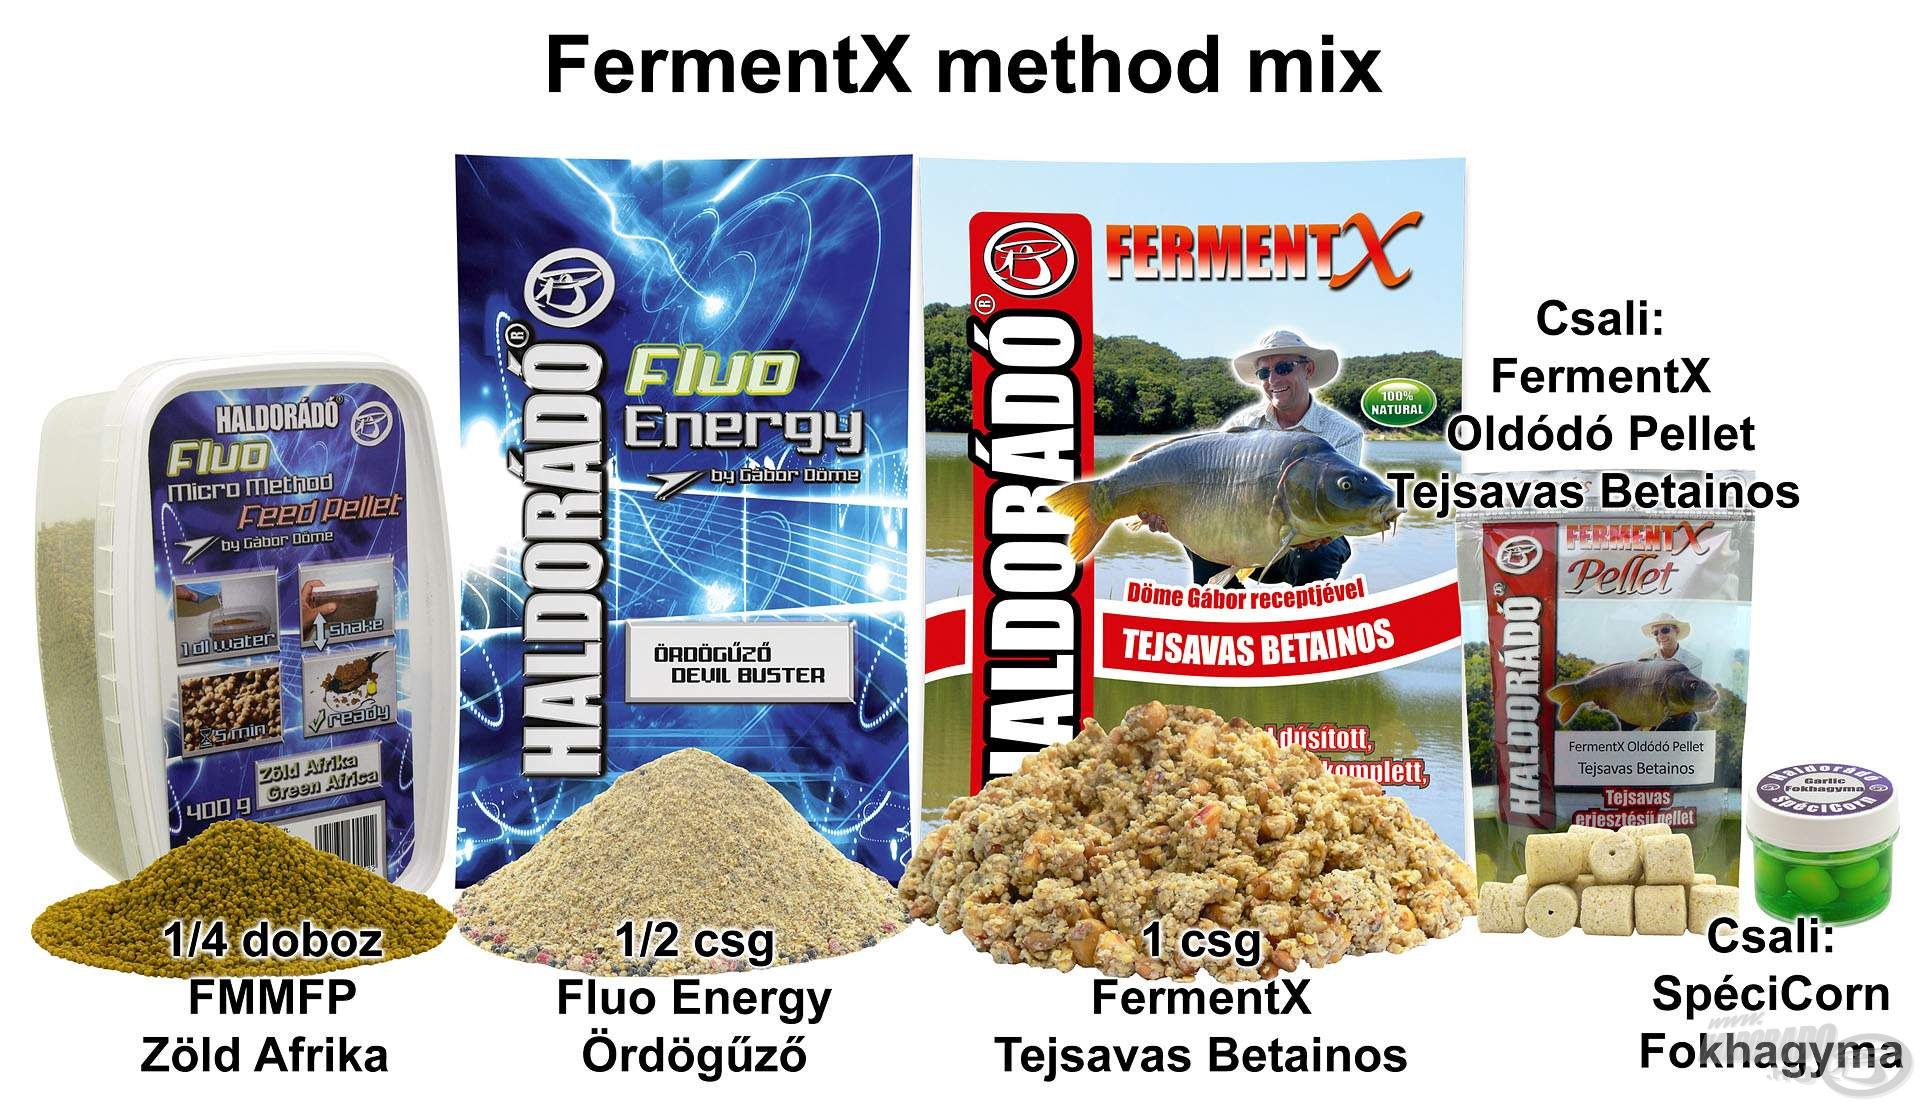 FermentX method mix